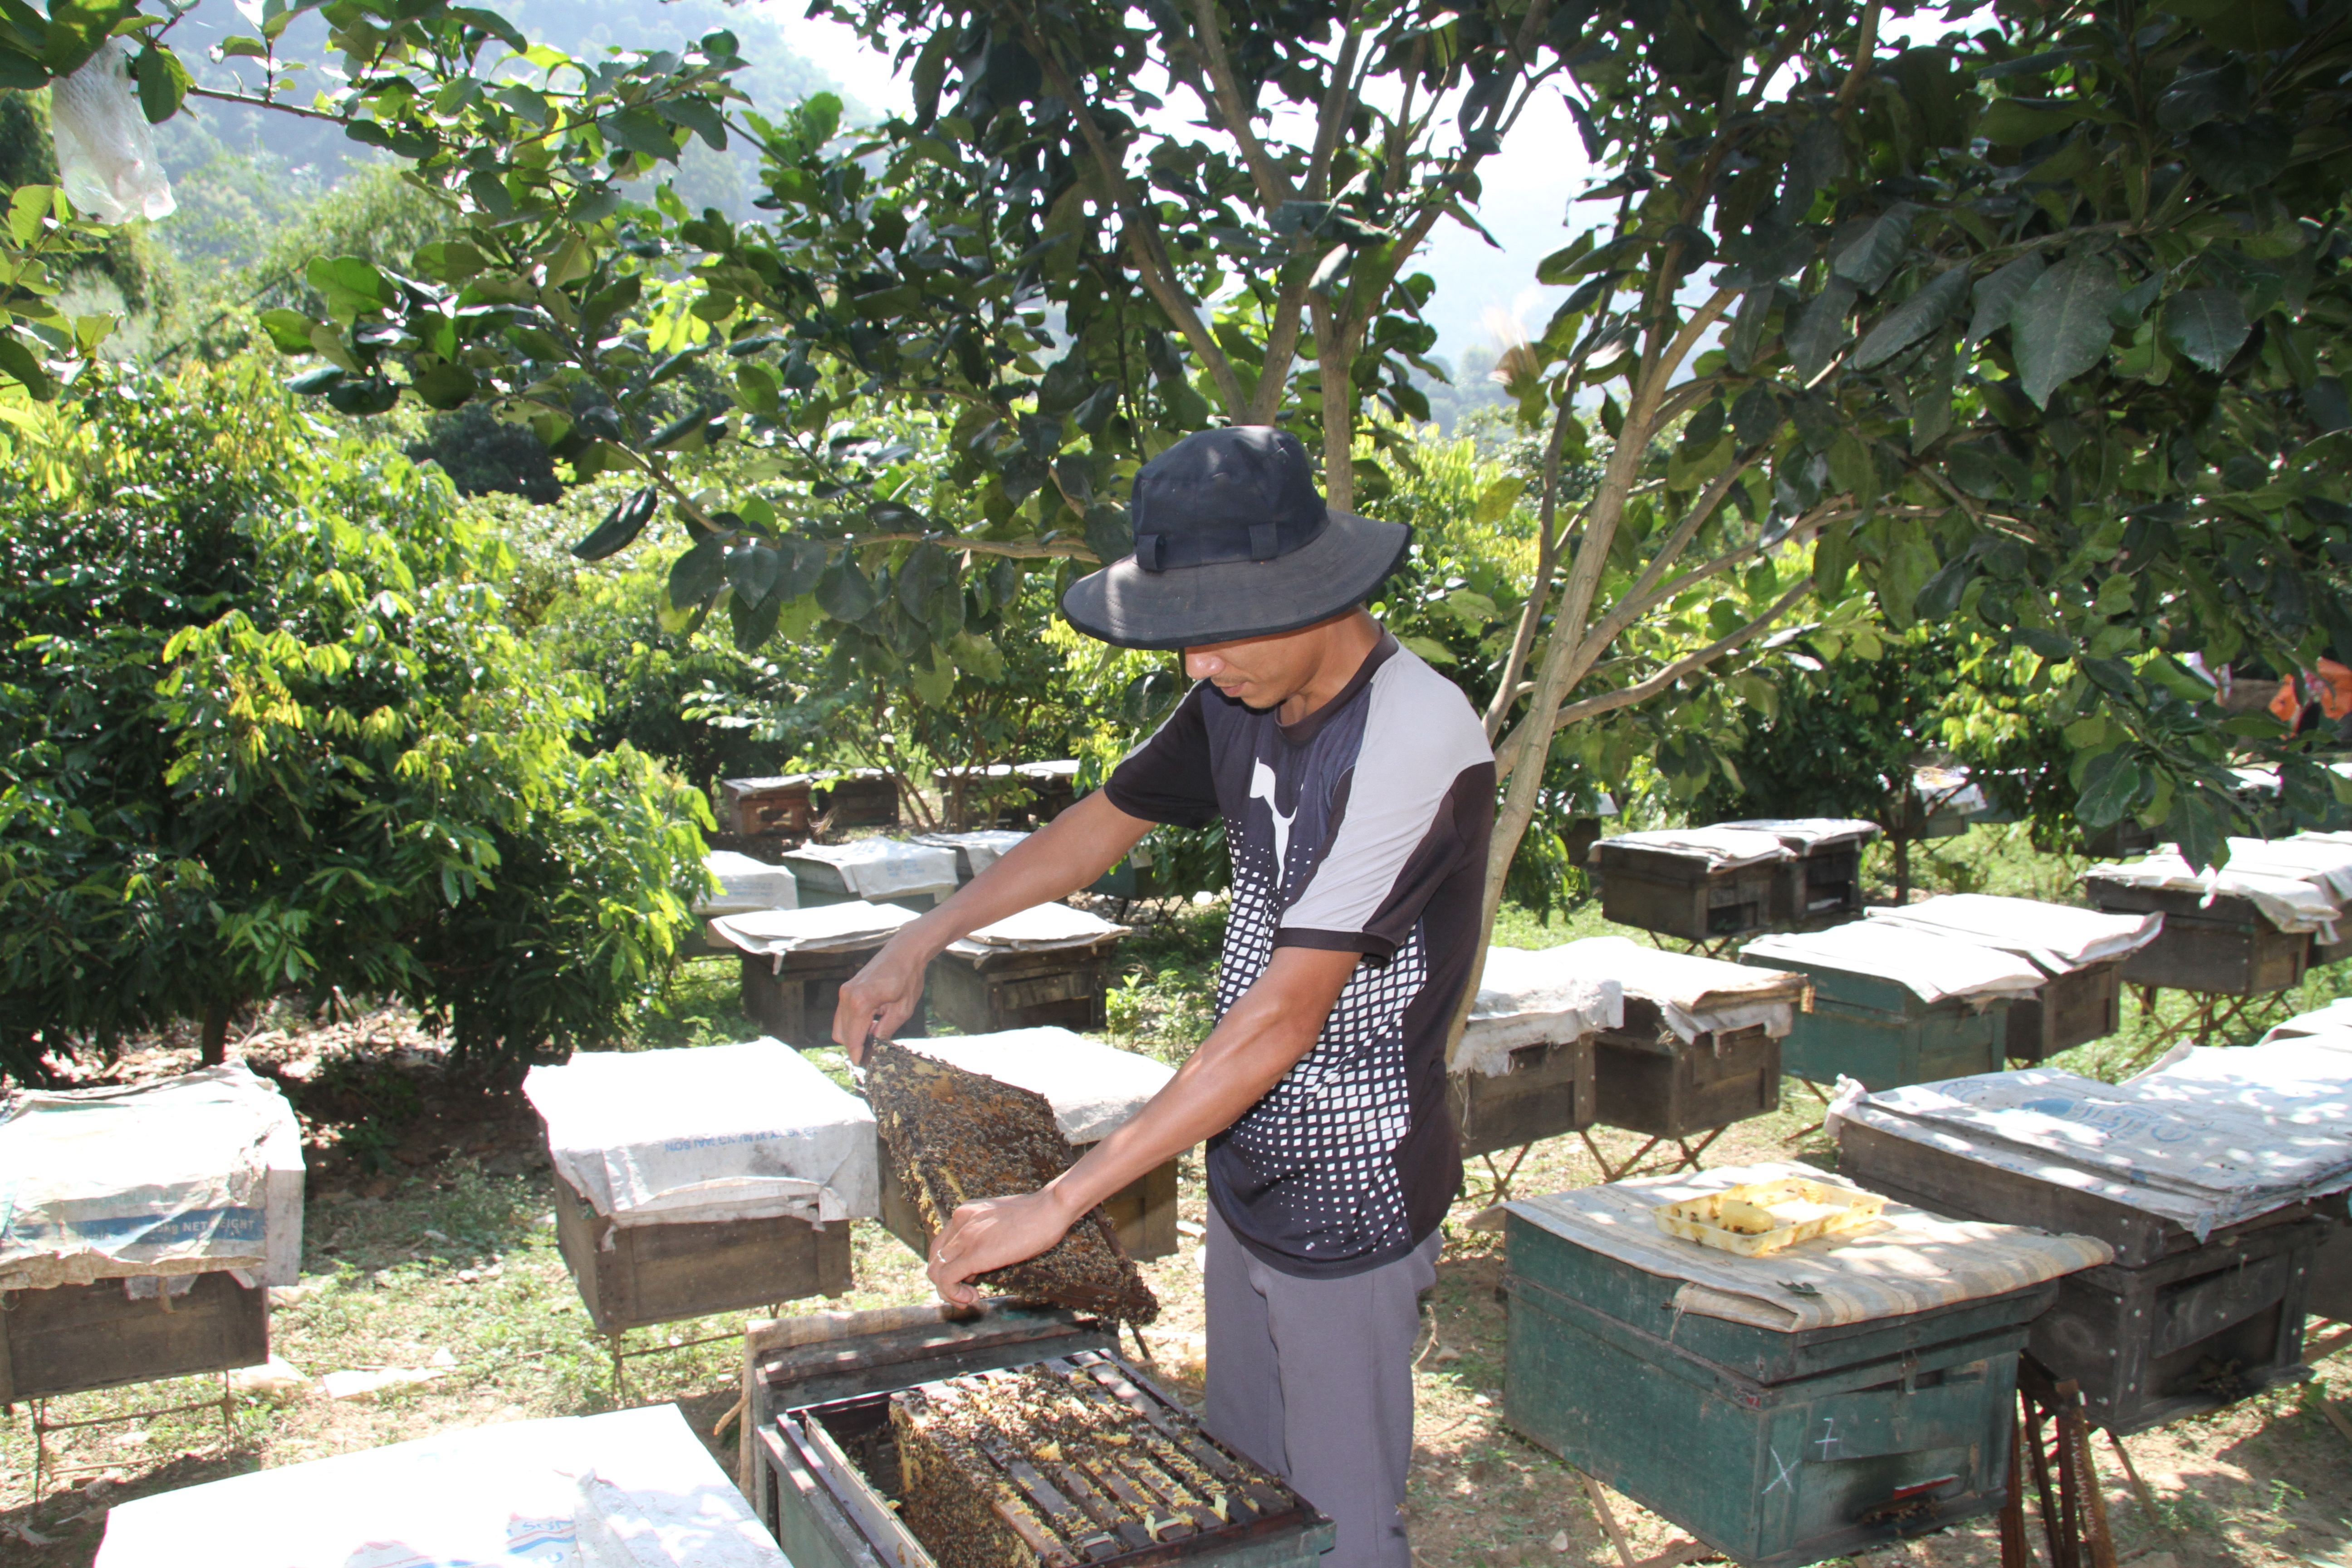 Mô hình nuôi ong lấy mật tại bản Tạ Búng xã Tạ Bú bước đầu mang lại hiệu quả kinh tế. ảnh Nam Trứ